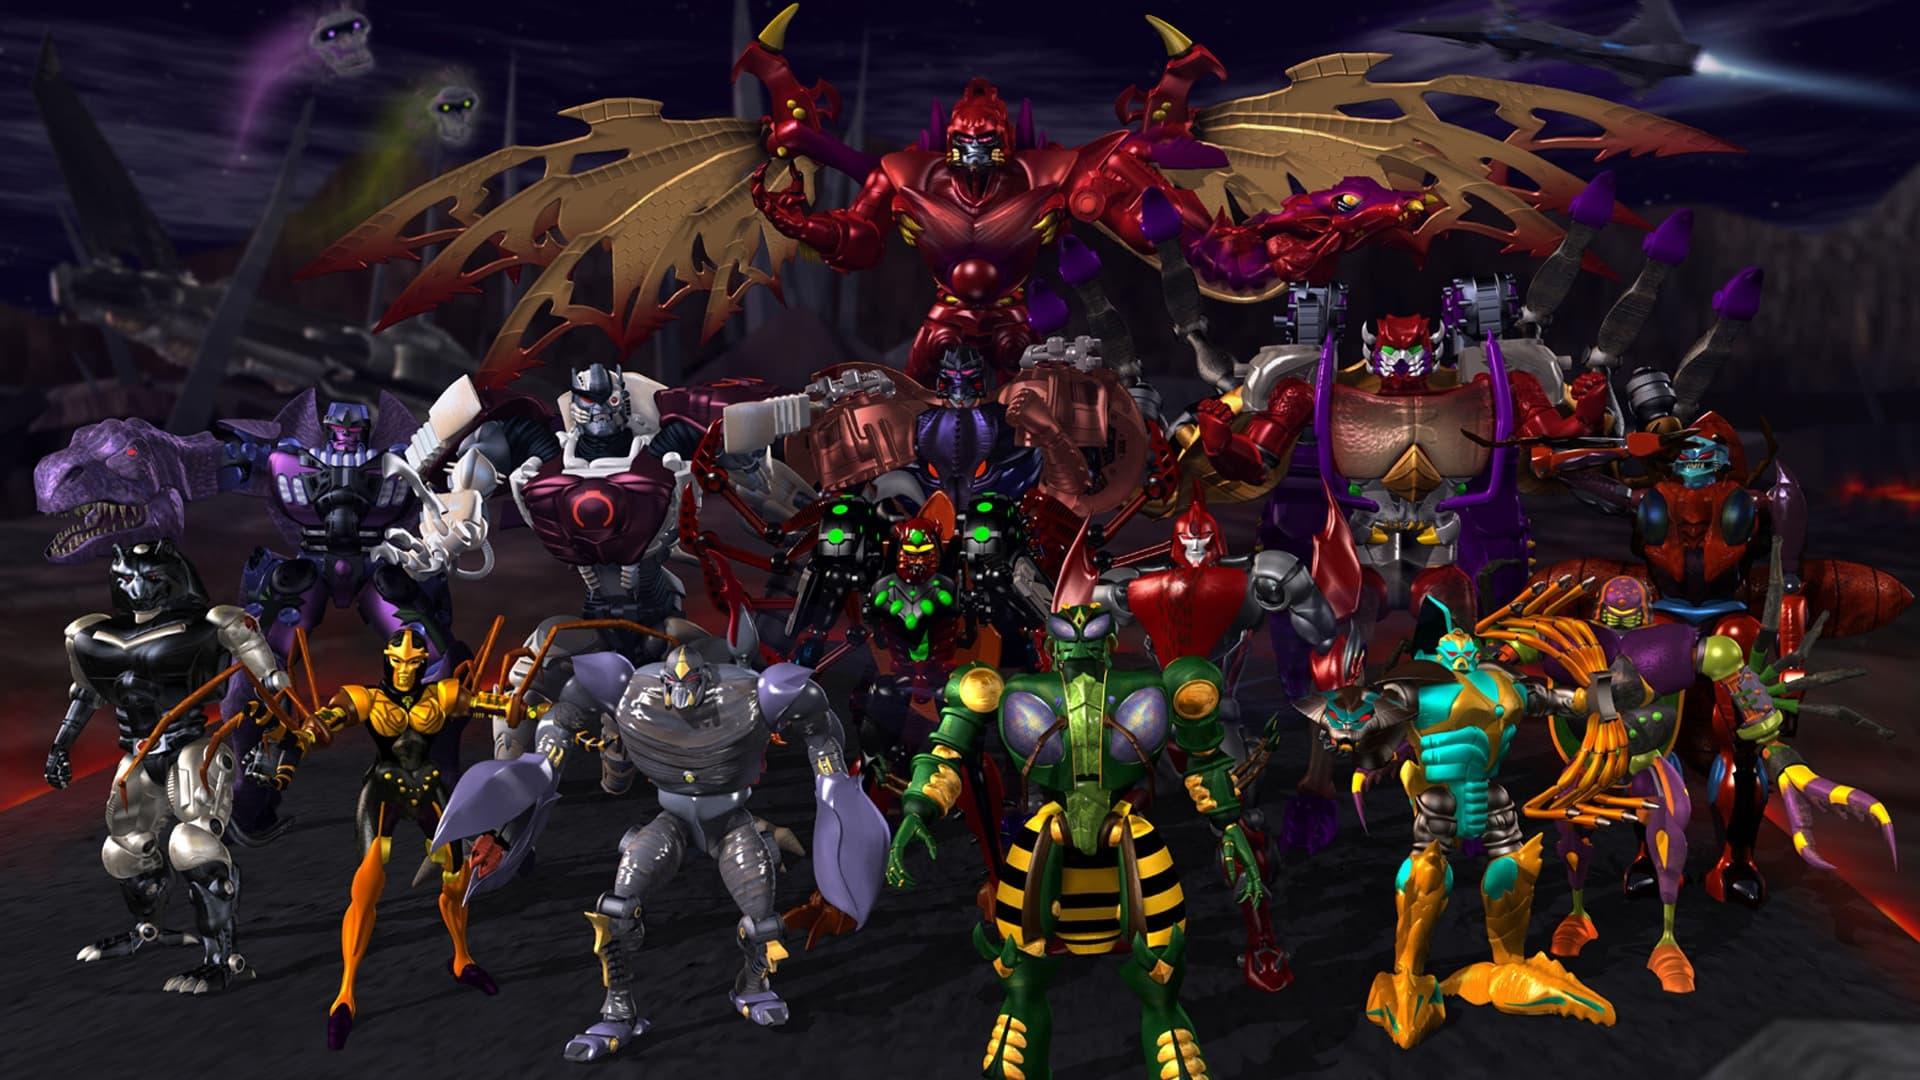 Beast Wars: Transformers backdrop